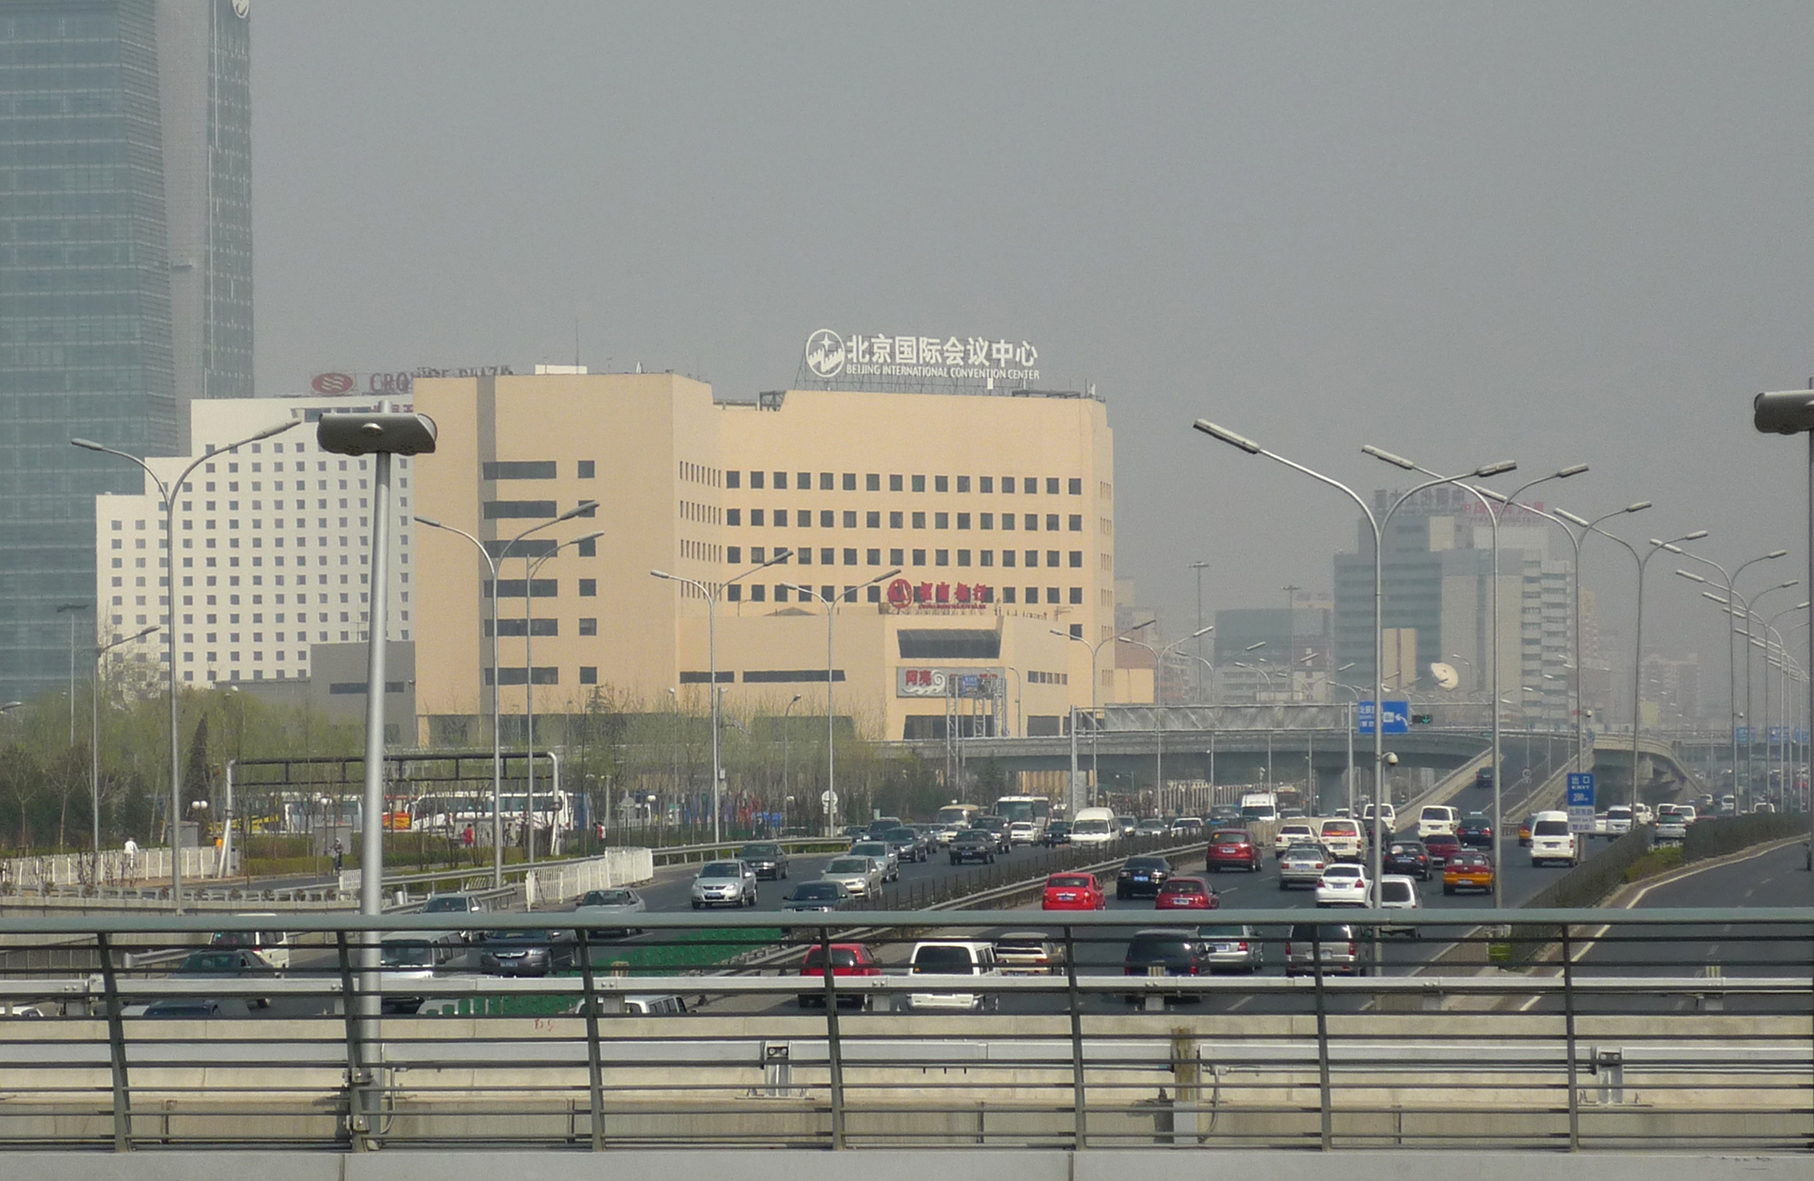 Peking zählt zu den Megacities mit den größten Problemen bei der Luftqualität weltweit. Der zunehmende Autoverkehr ist eine von vielen Ursachen dafür. Foto: Bettina Nekat/TROPOS